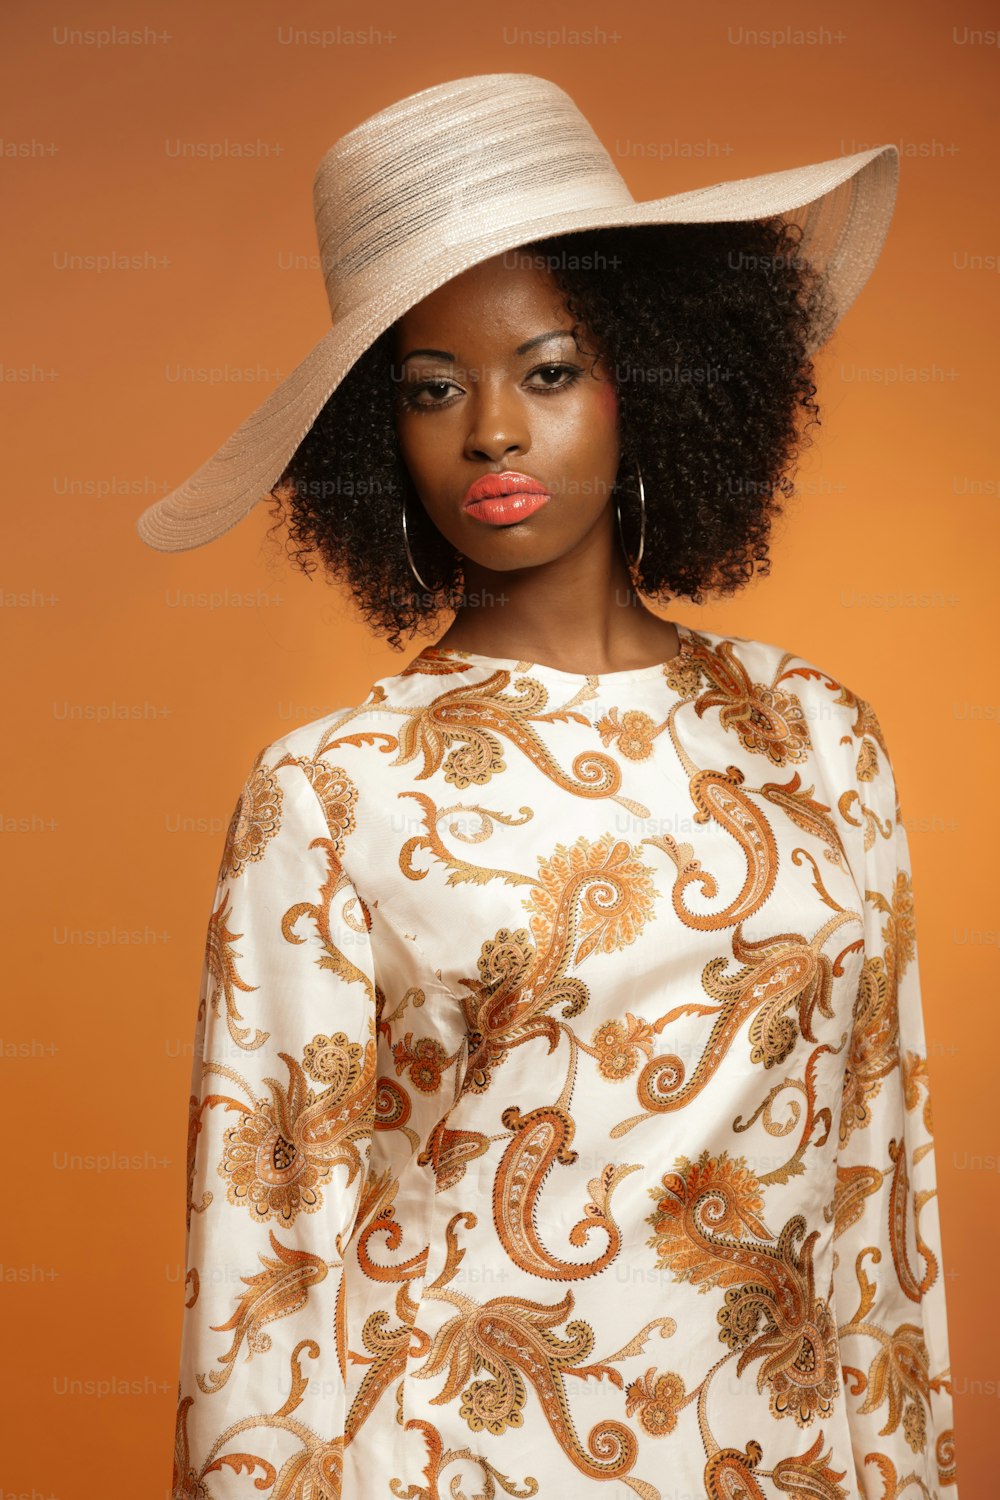 Mulher afro da moda retrô dos anos 70 com vestido paisley e chapéu branco. Fundo marrom.